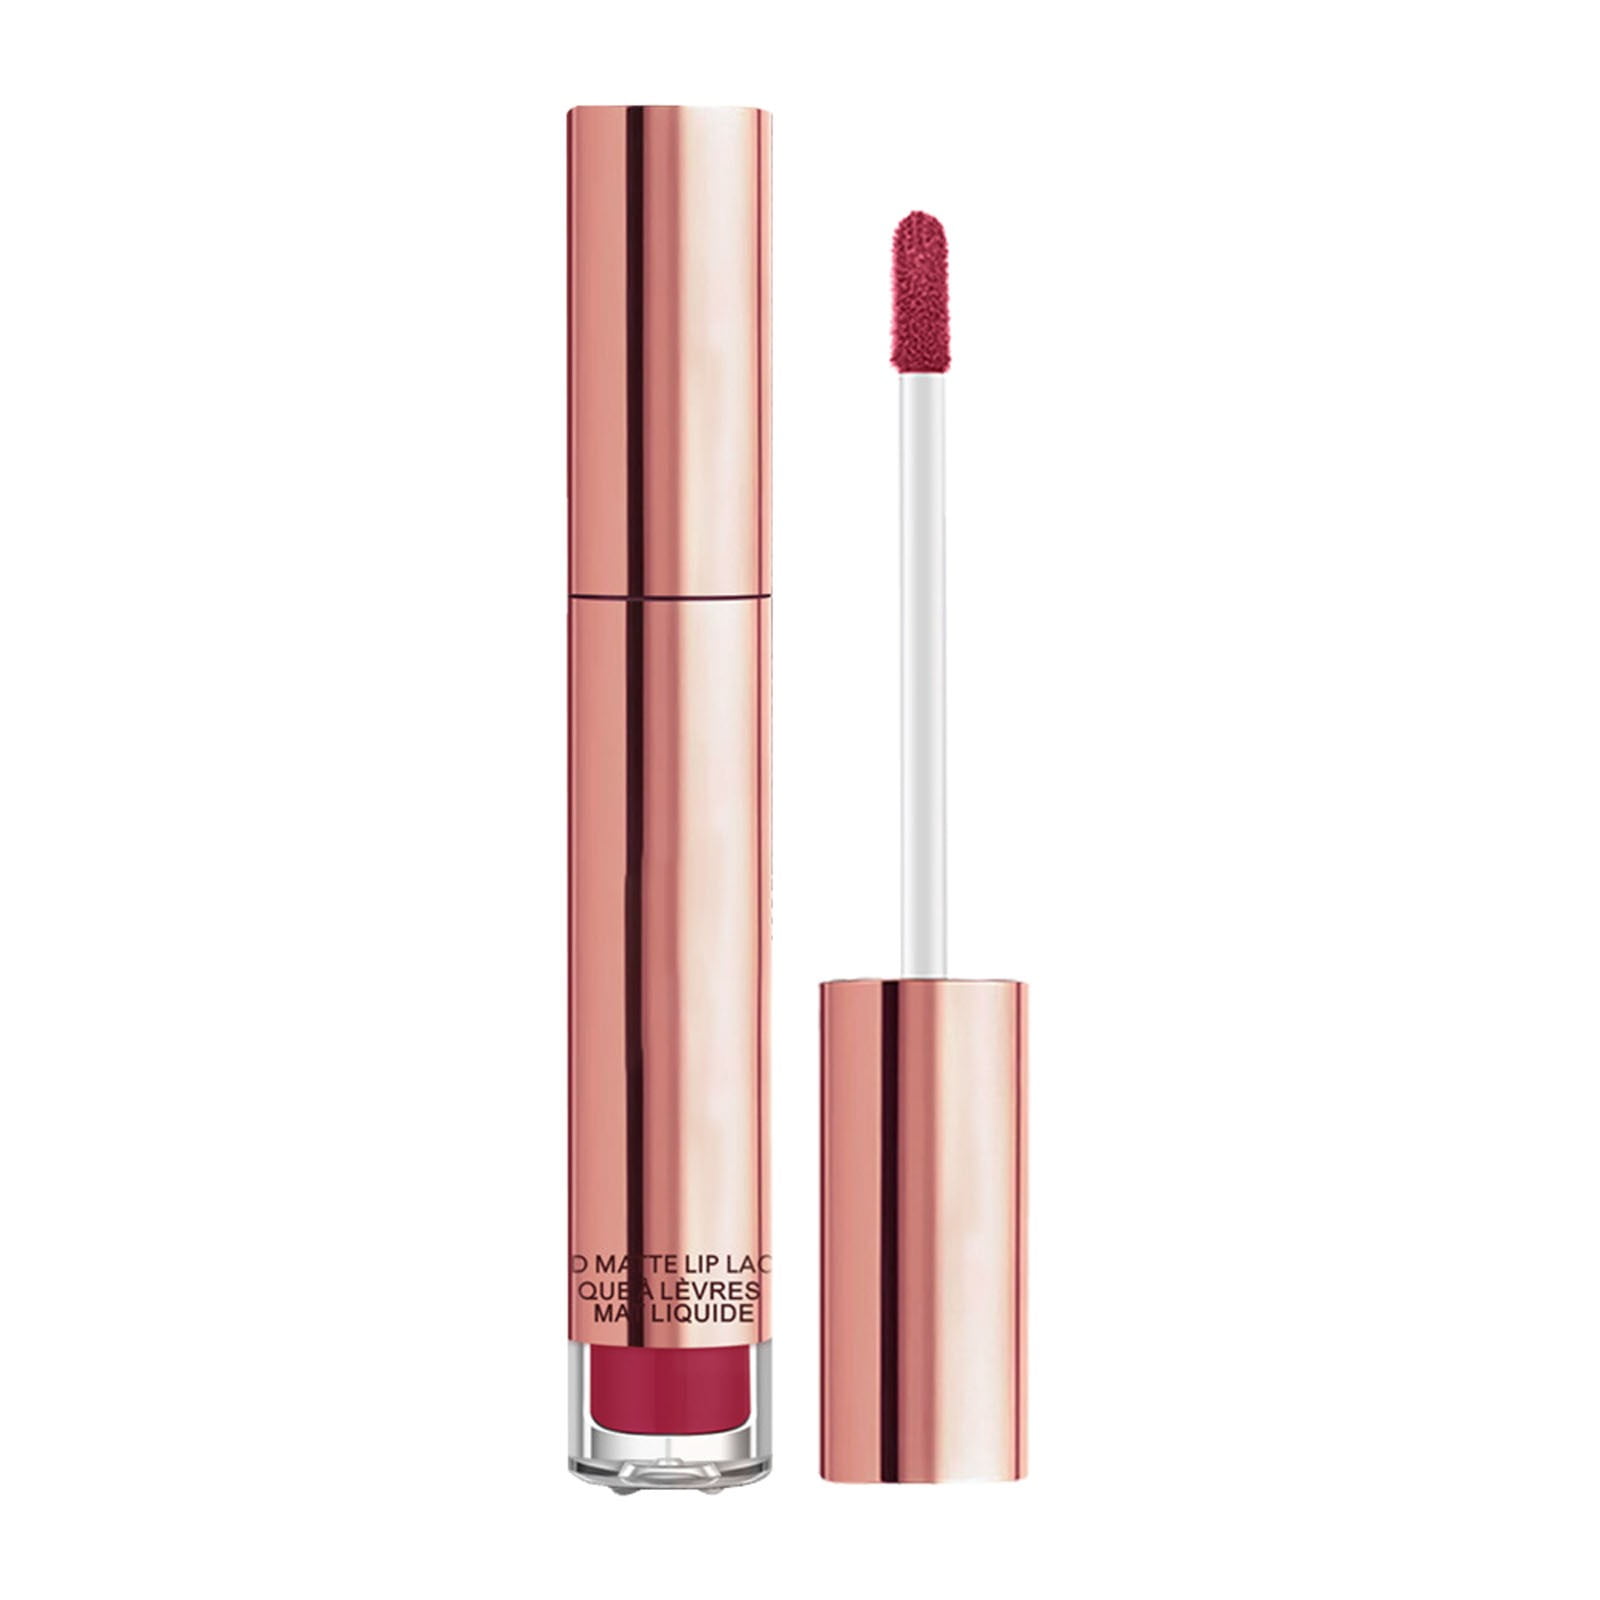 Wholesale Wholesale Lipgloss Clear Lip Gloss Bulk Lipstick